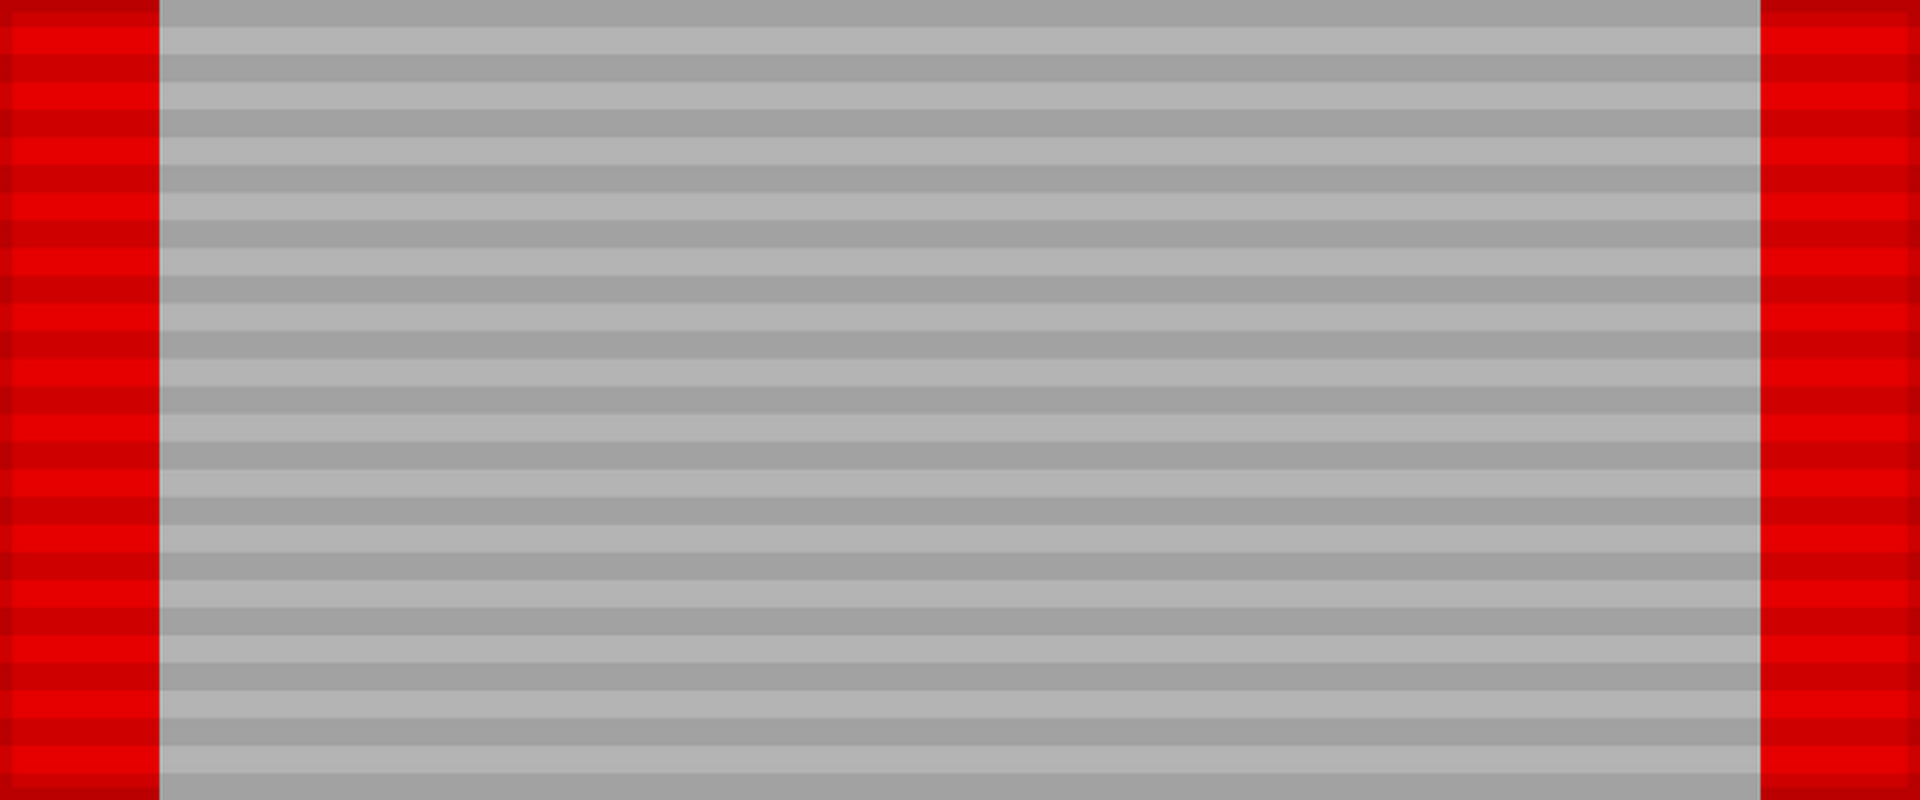 Лента медали «XX лет Рабоче-Крестьянской Красной Армии». СССР.